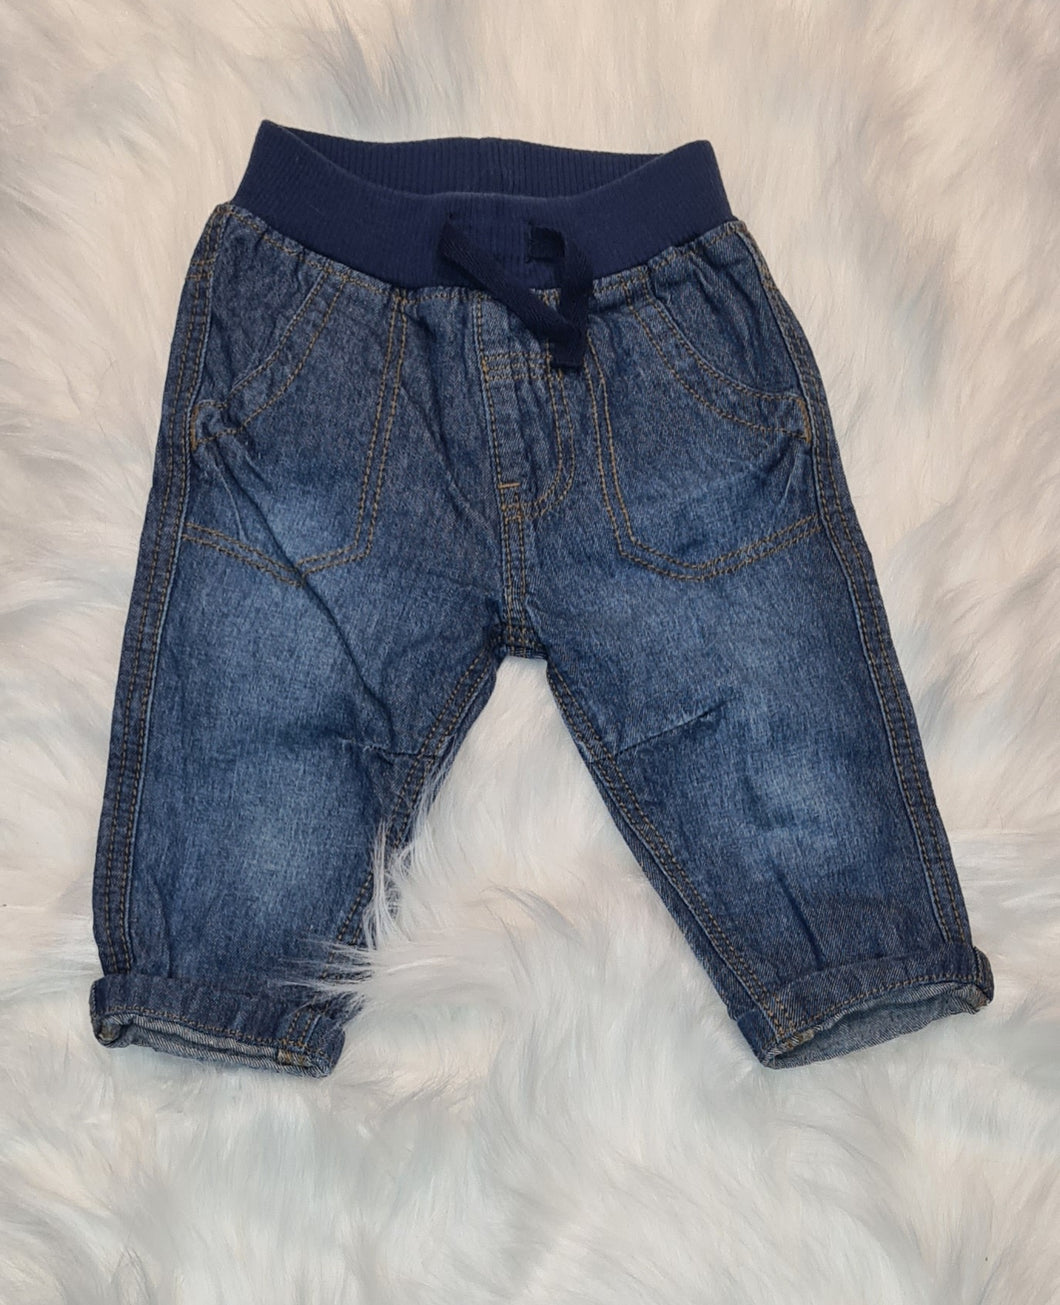 Boys 0-3 Months - Blue Jogger/Jeans